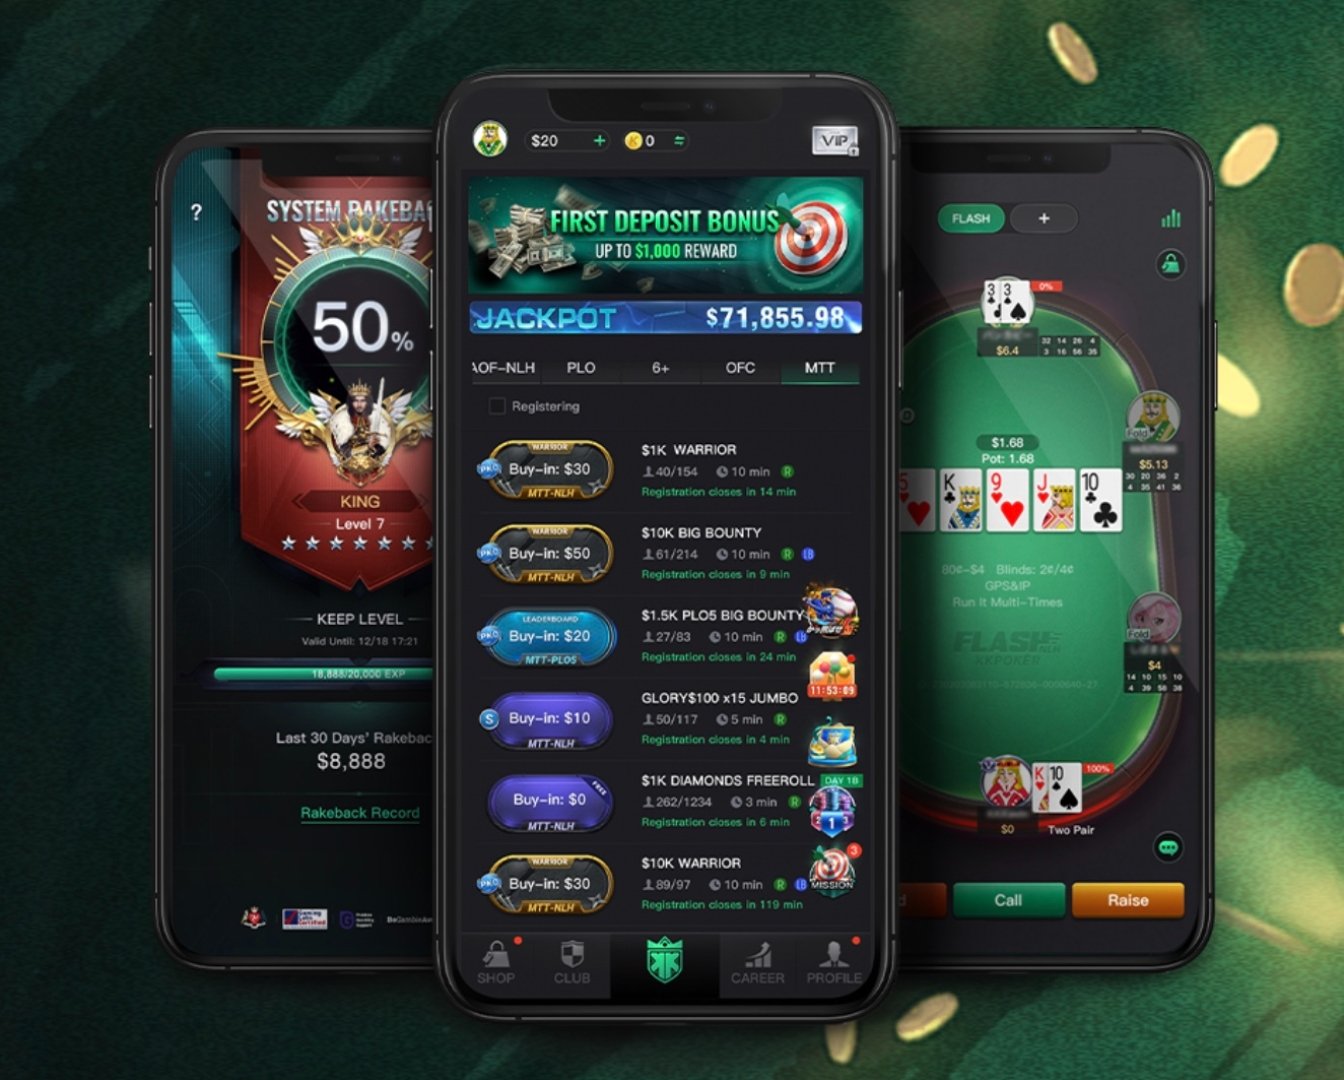 KK Poker Mobile App